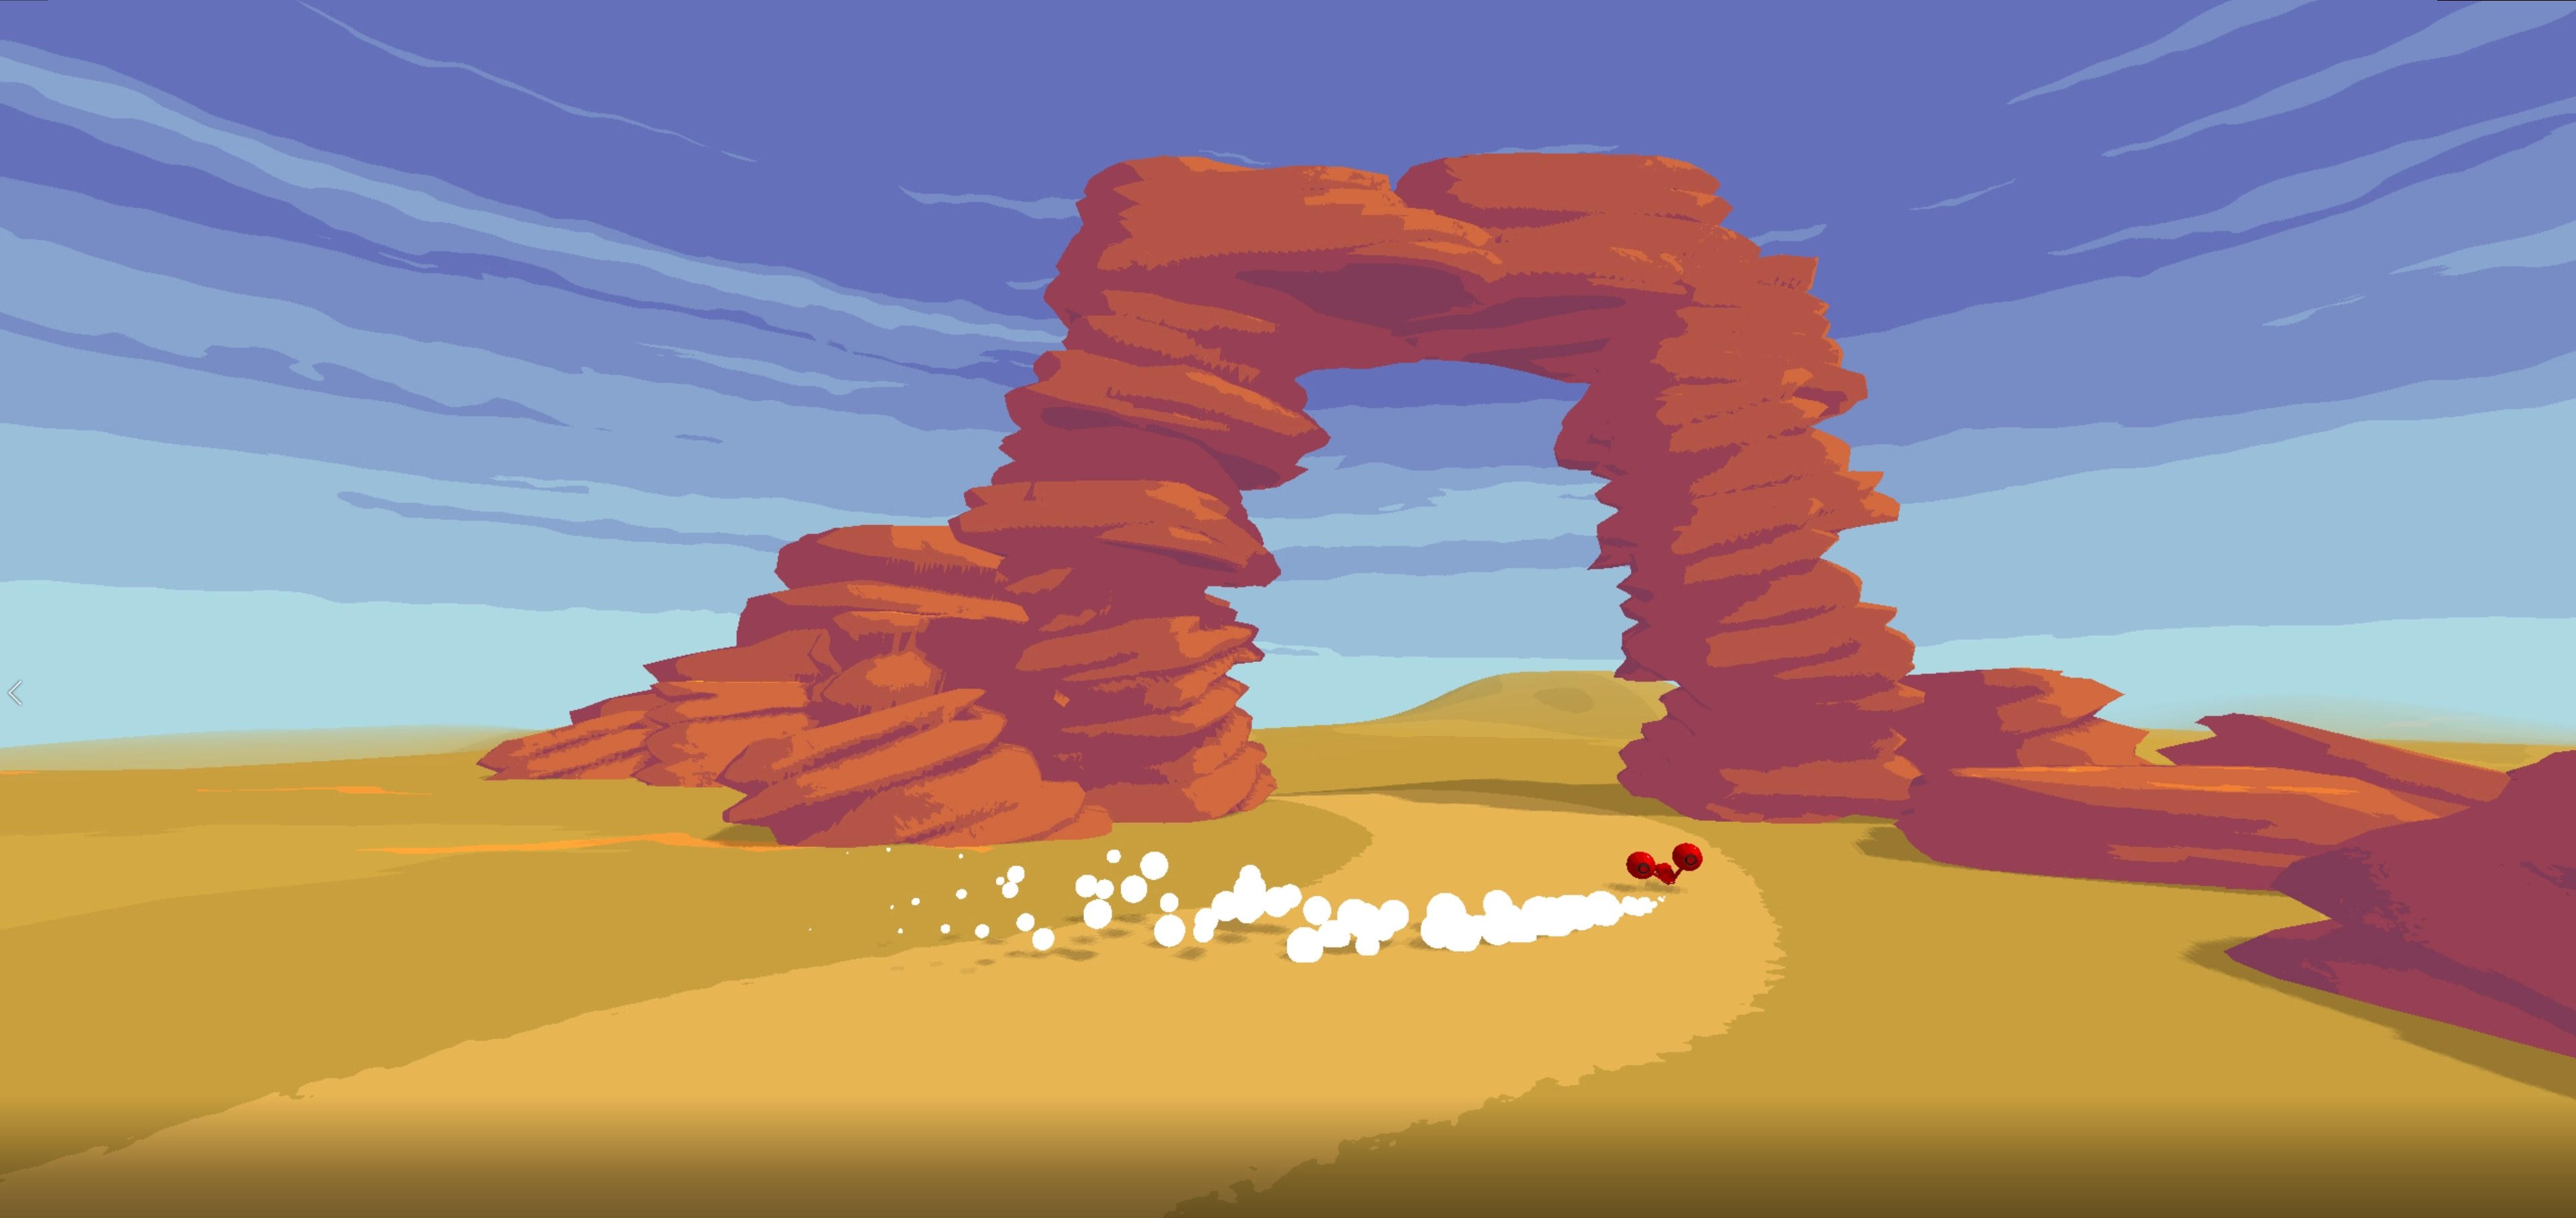 header image of desert